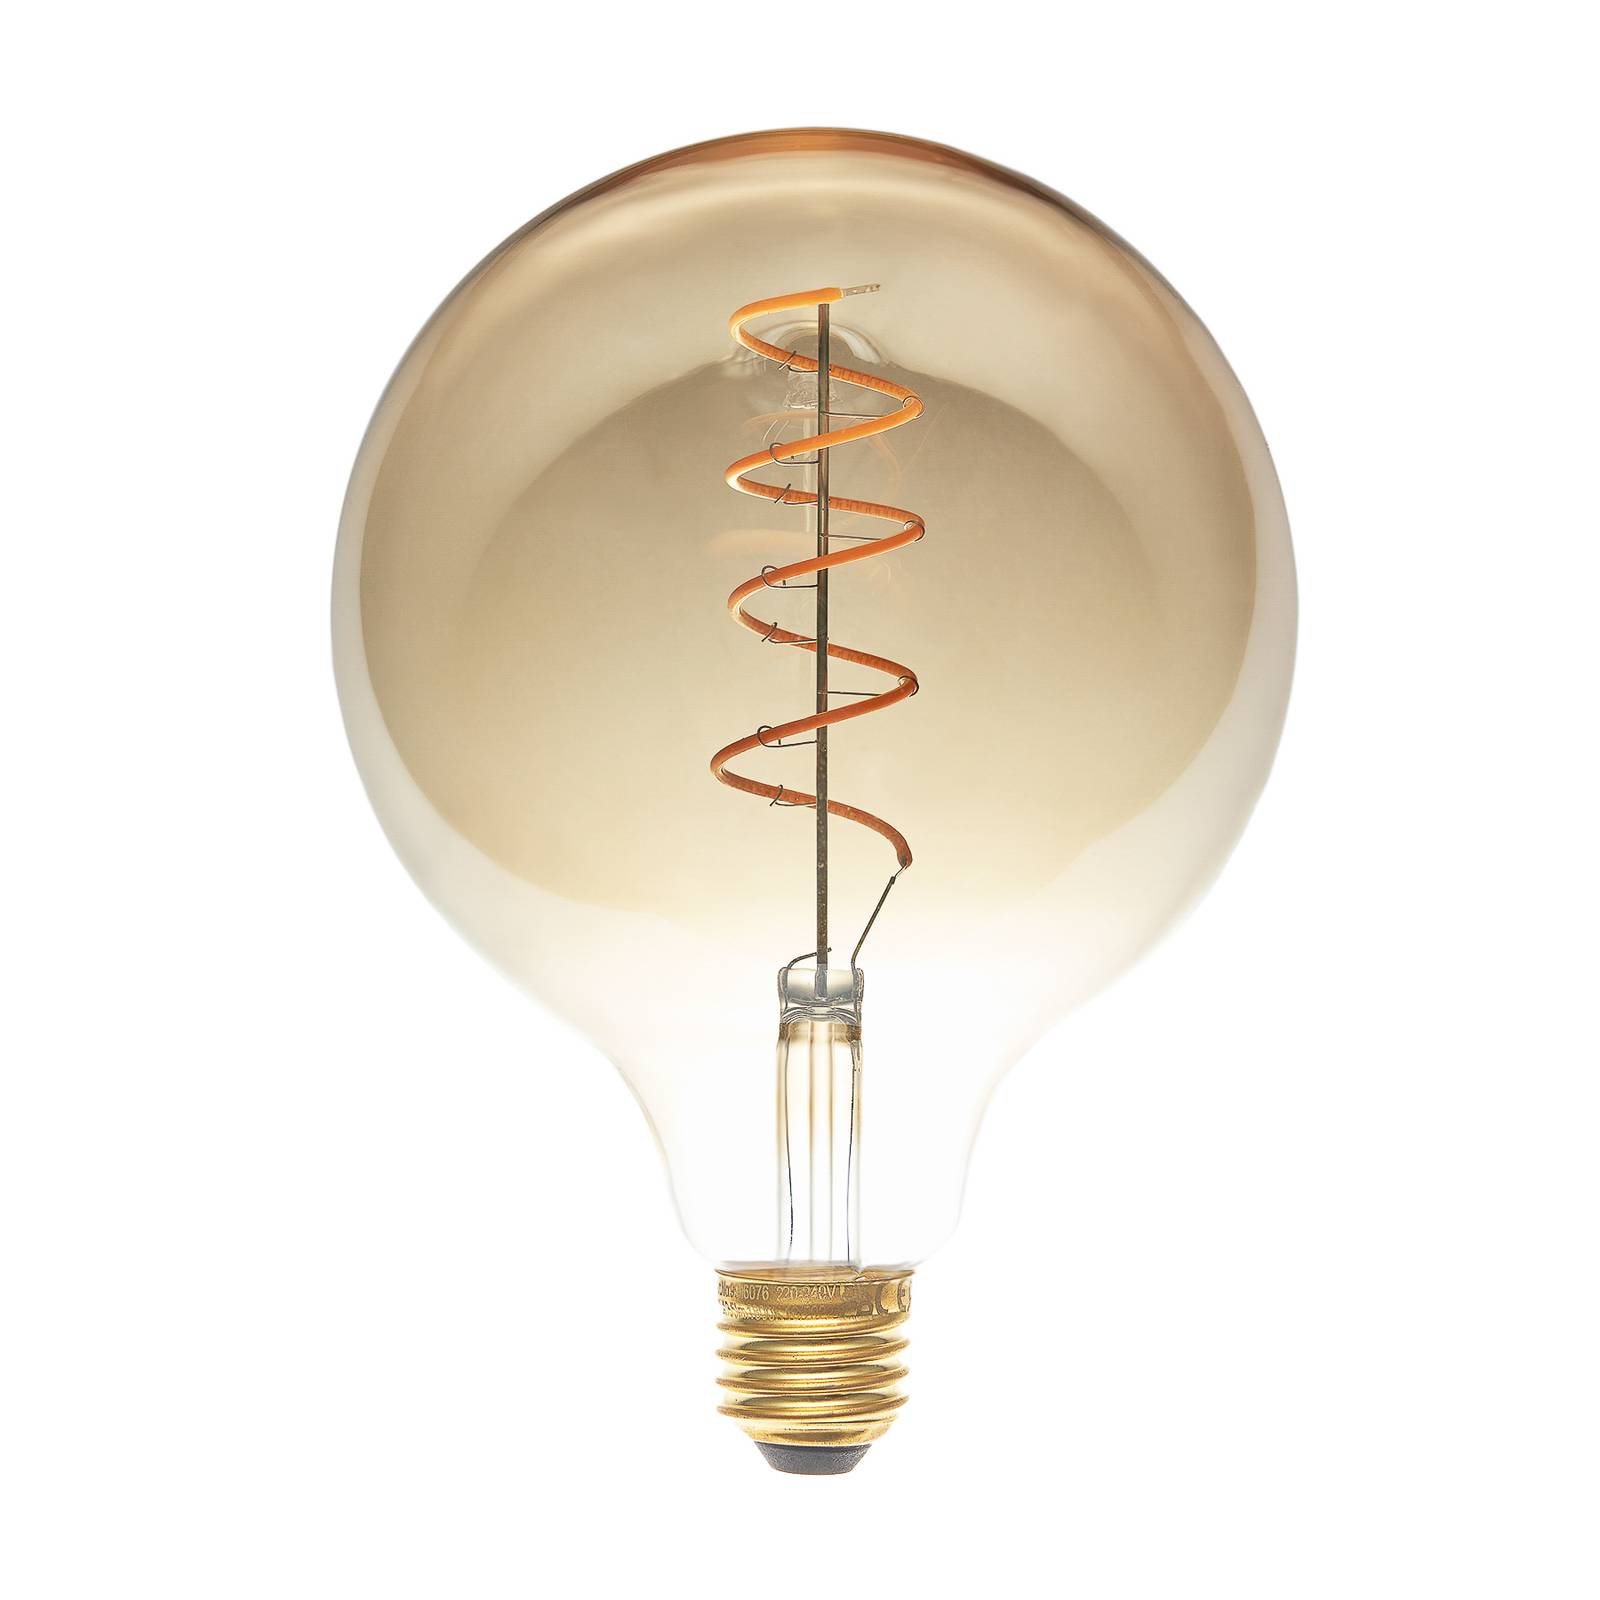 LUCANDE E27 3,8W LED-Globelampe, G125, 1800K, amber